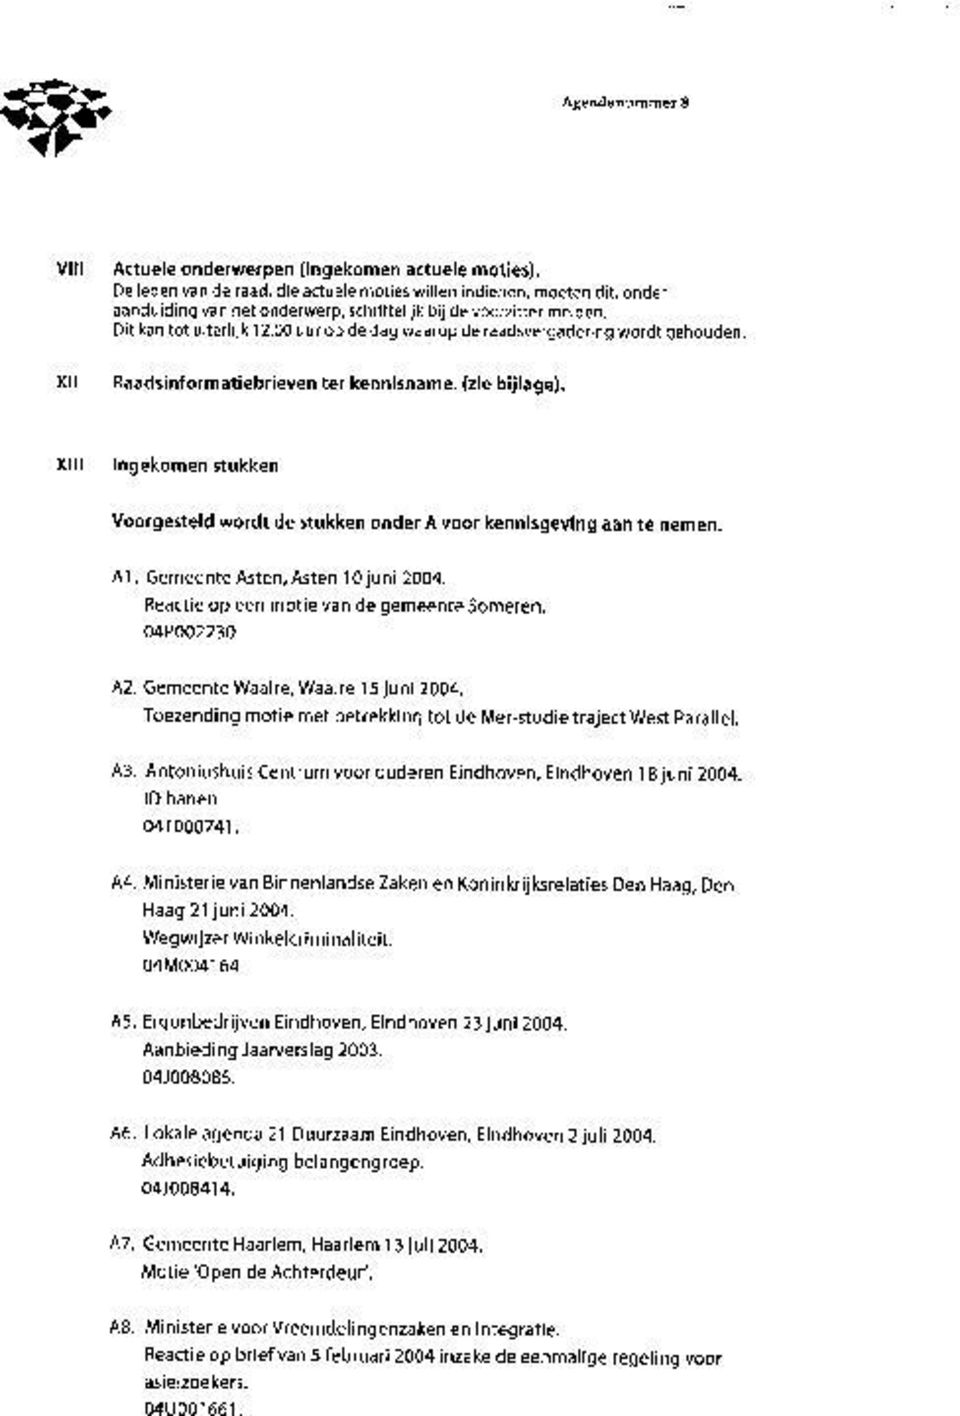 XIII Ingekomen stukken Voorgesteld wordt de stukken onder A voor kennisgeving aan te nemen. A1. Gemeente Asten, Asten 10 juni 2004. Reactie op een motie van de gemeente Someren. 04P002230.